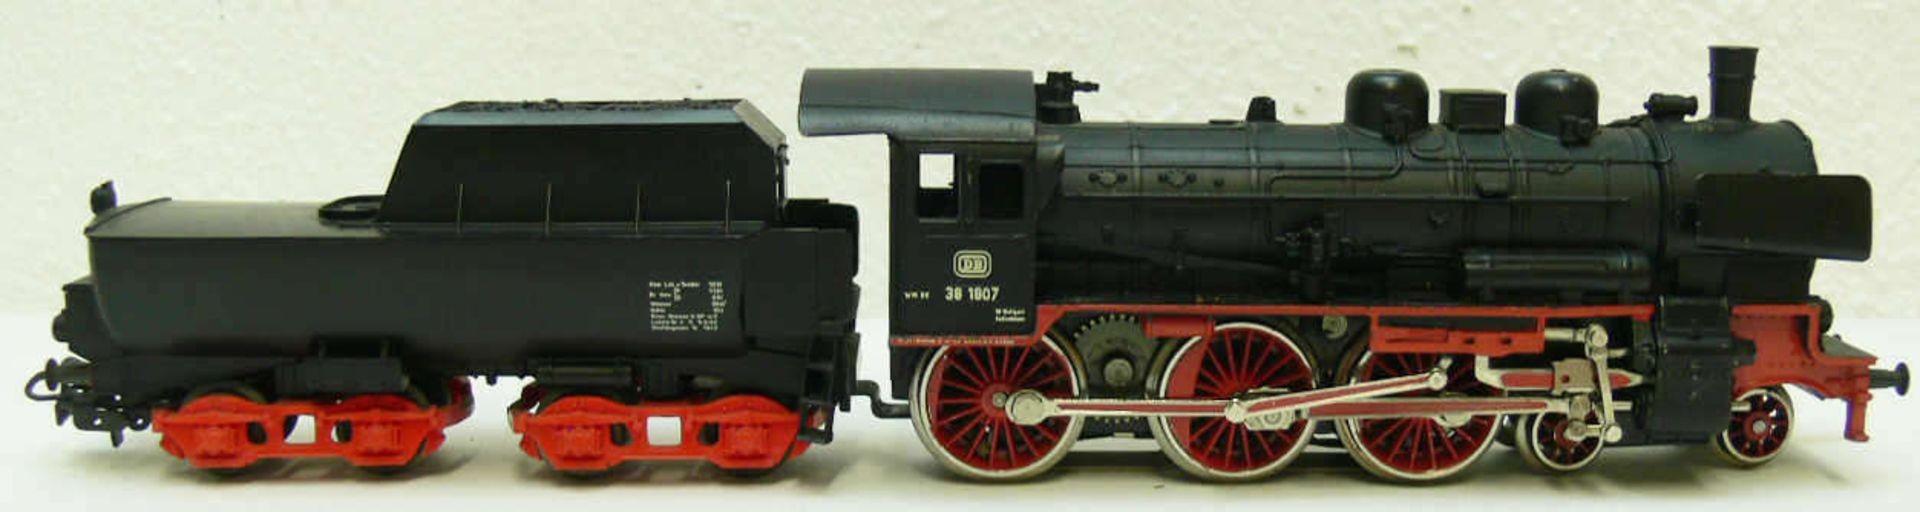 Märklin Dampflokomotive mit Schlepptender BR 38. BN 38 1807. Ohne OVP. Sehr guter Zustand mit